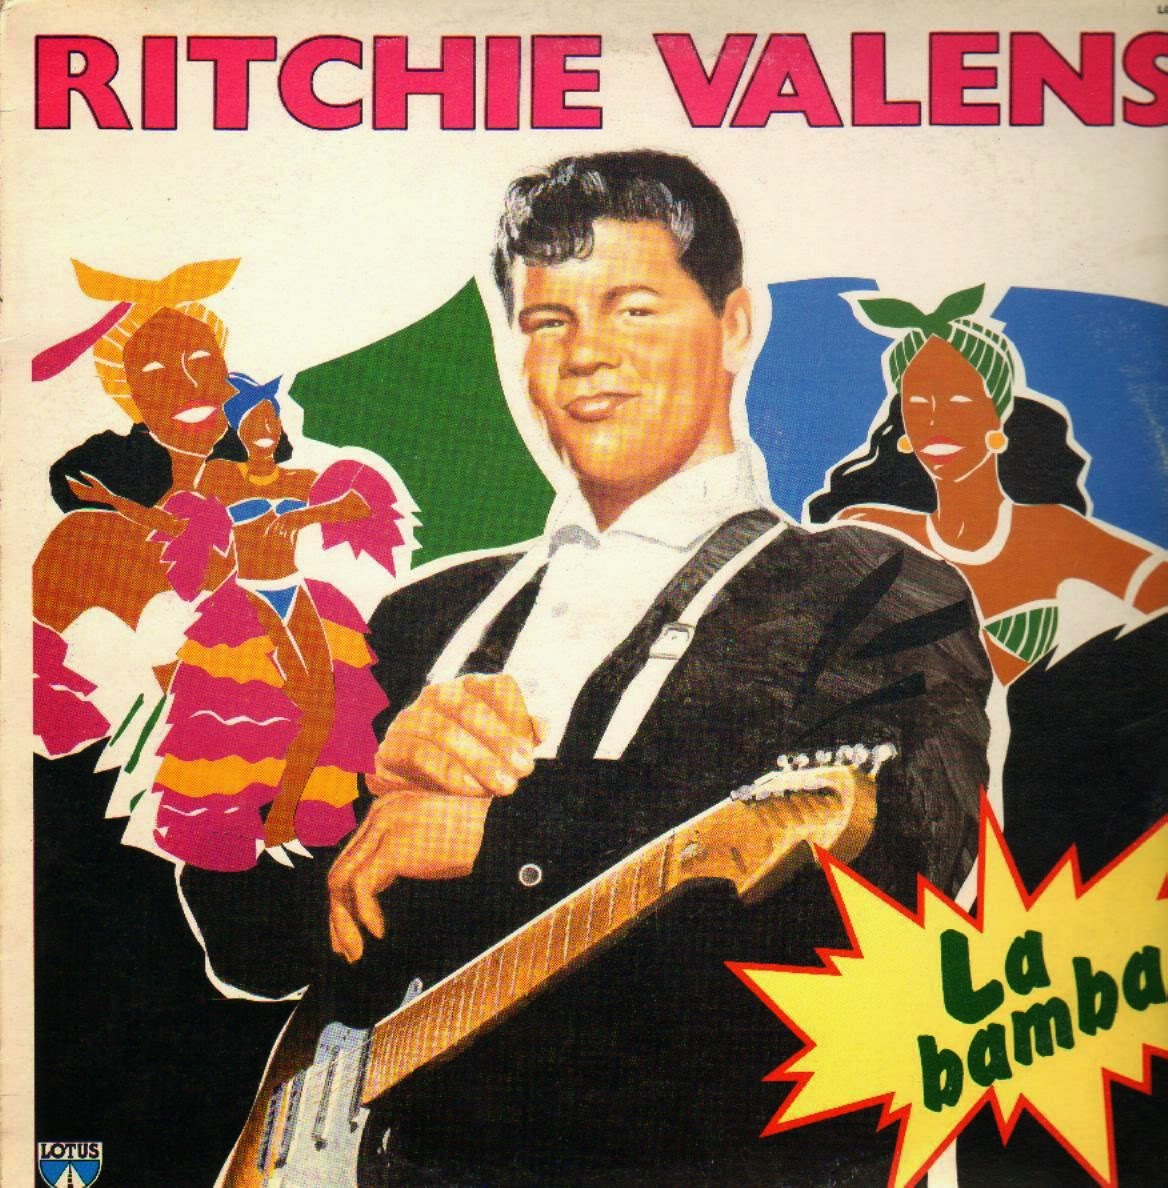 Los lobos la bamba. Ричи Валенса — la Bamba. Ritchie Valens la Bamba. Ritchie Valens обложка. La Bamba обложка.